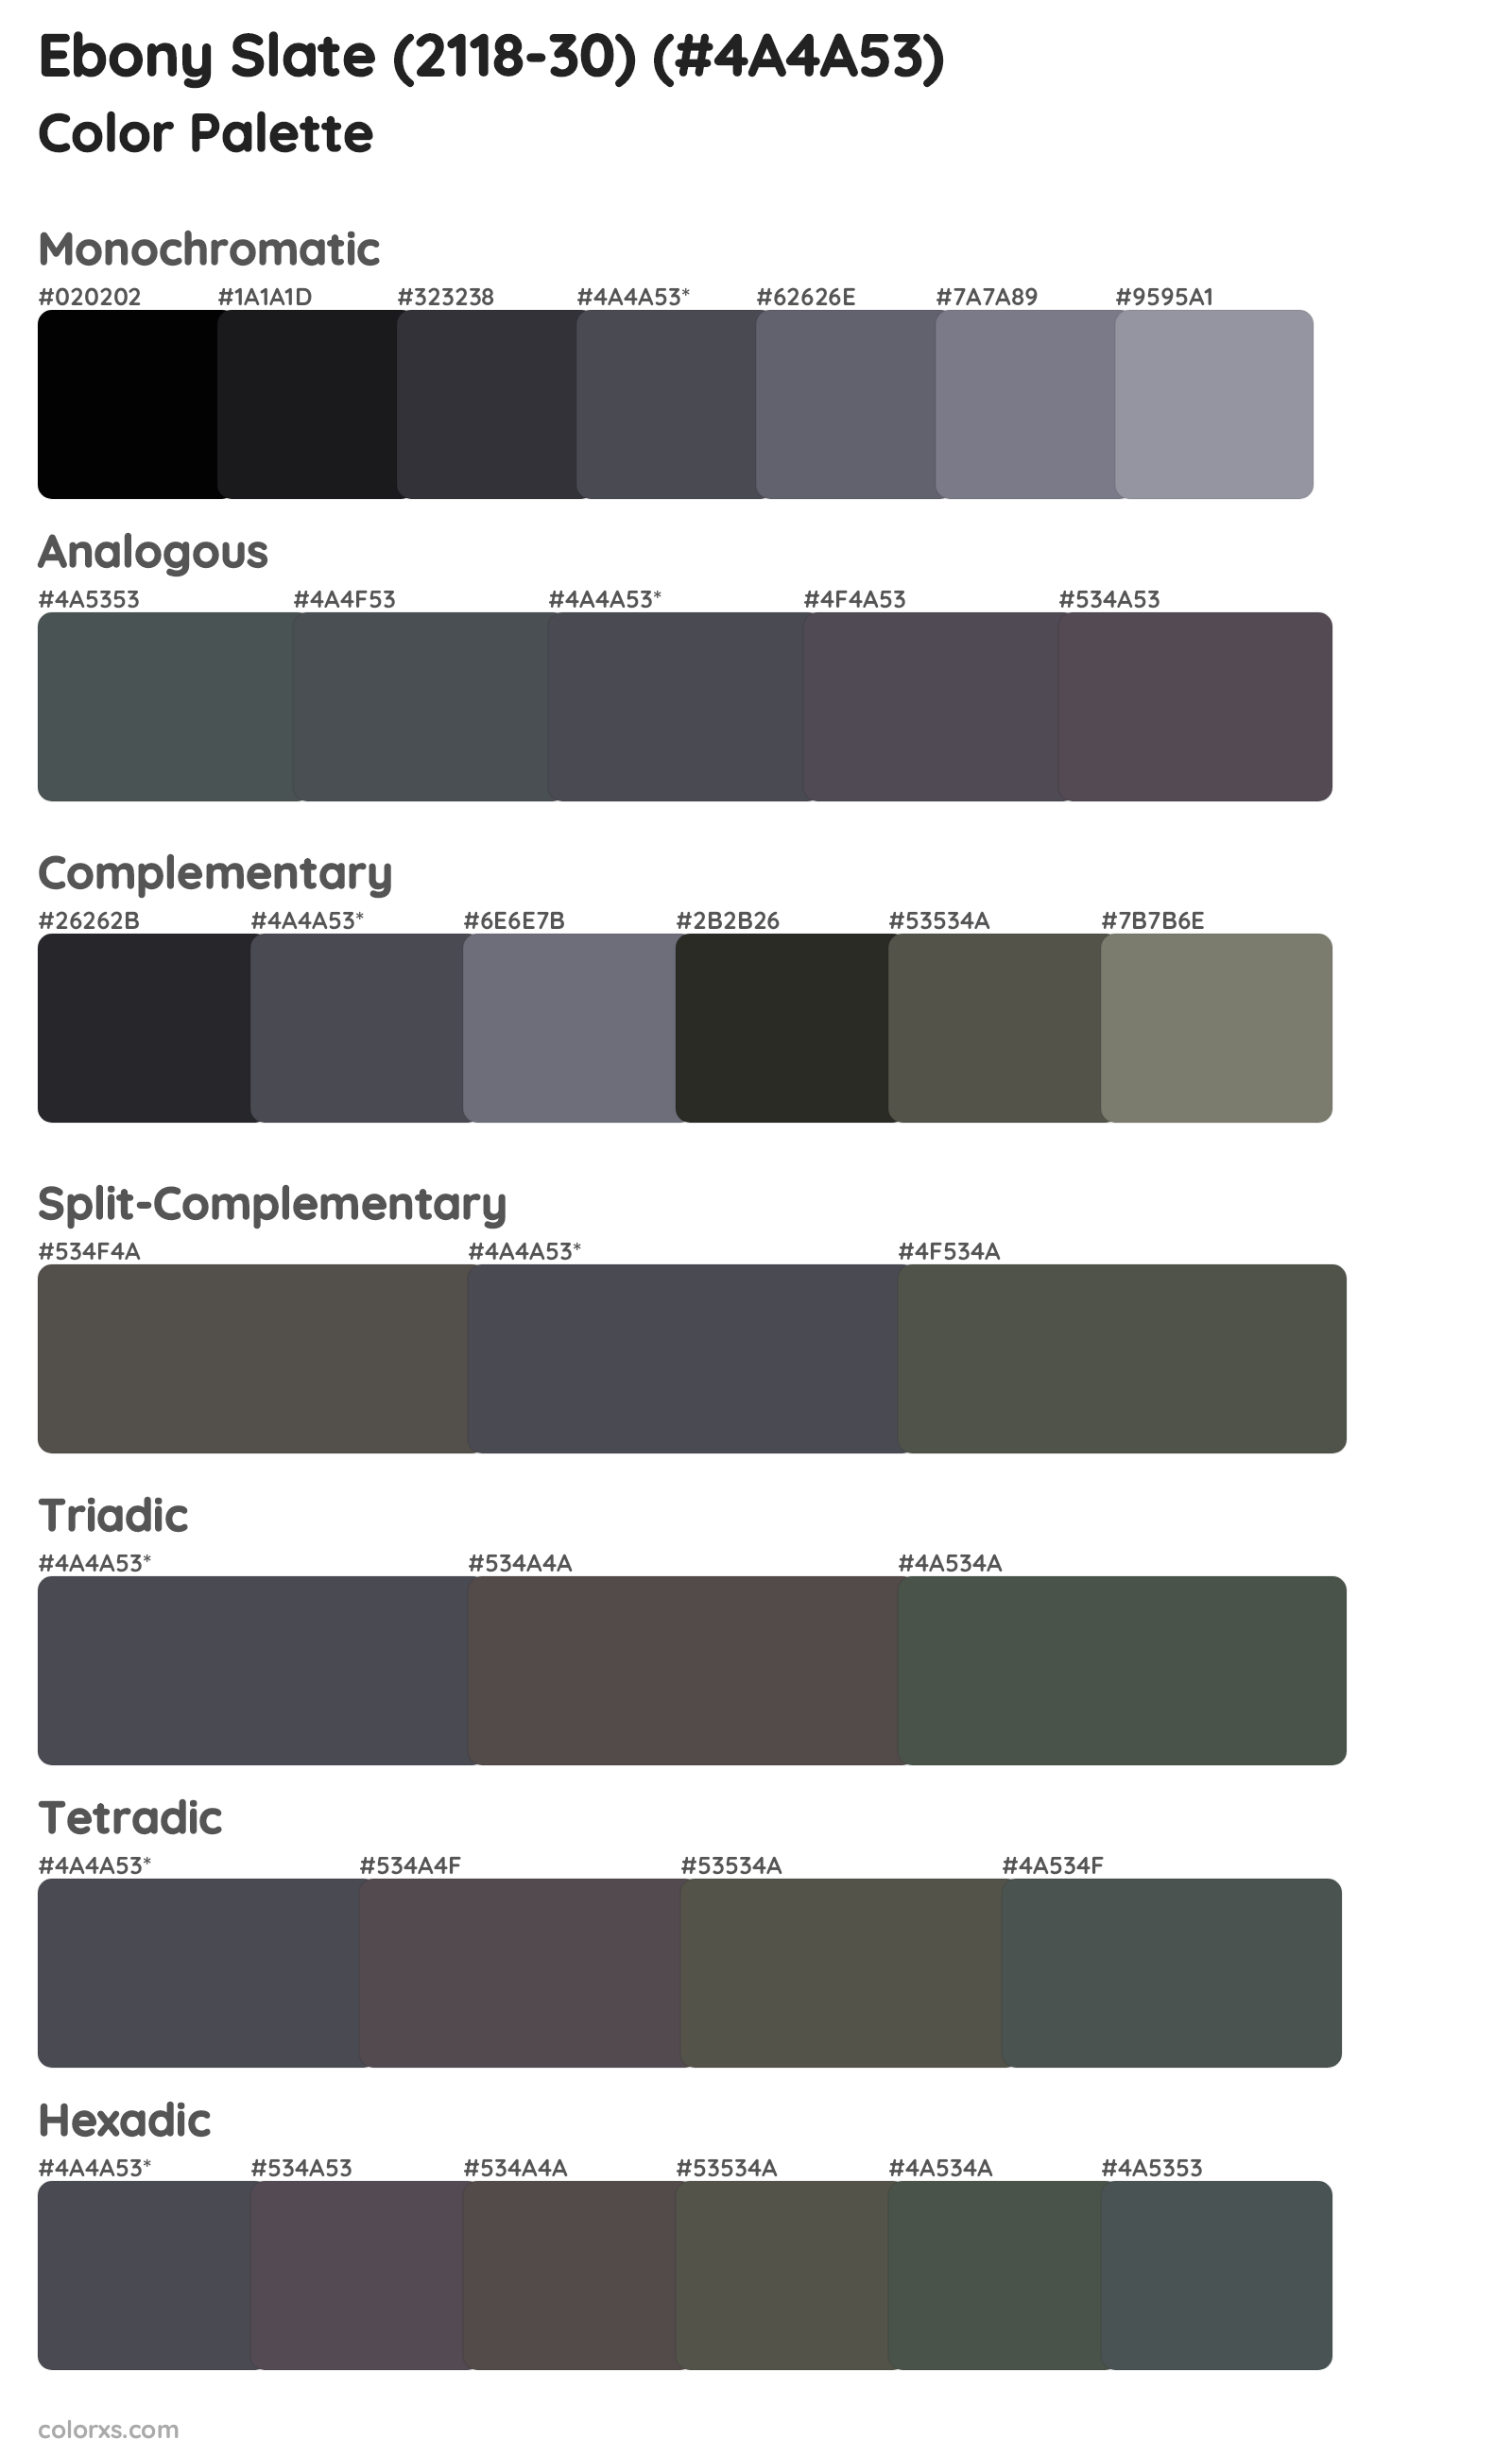 Ebony Slate (2118-30) Color Scheme Palettes